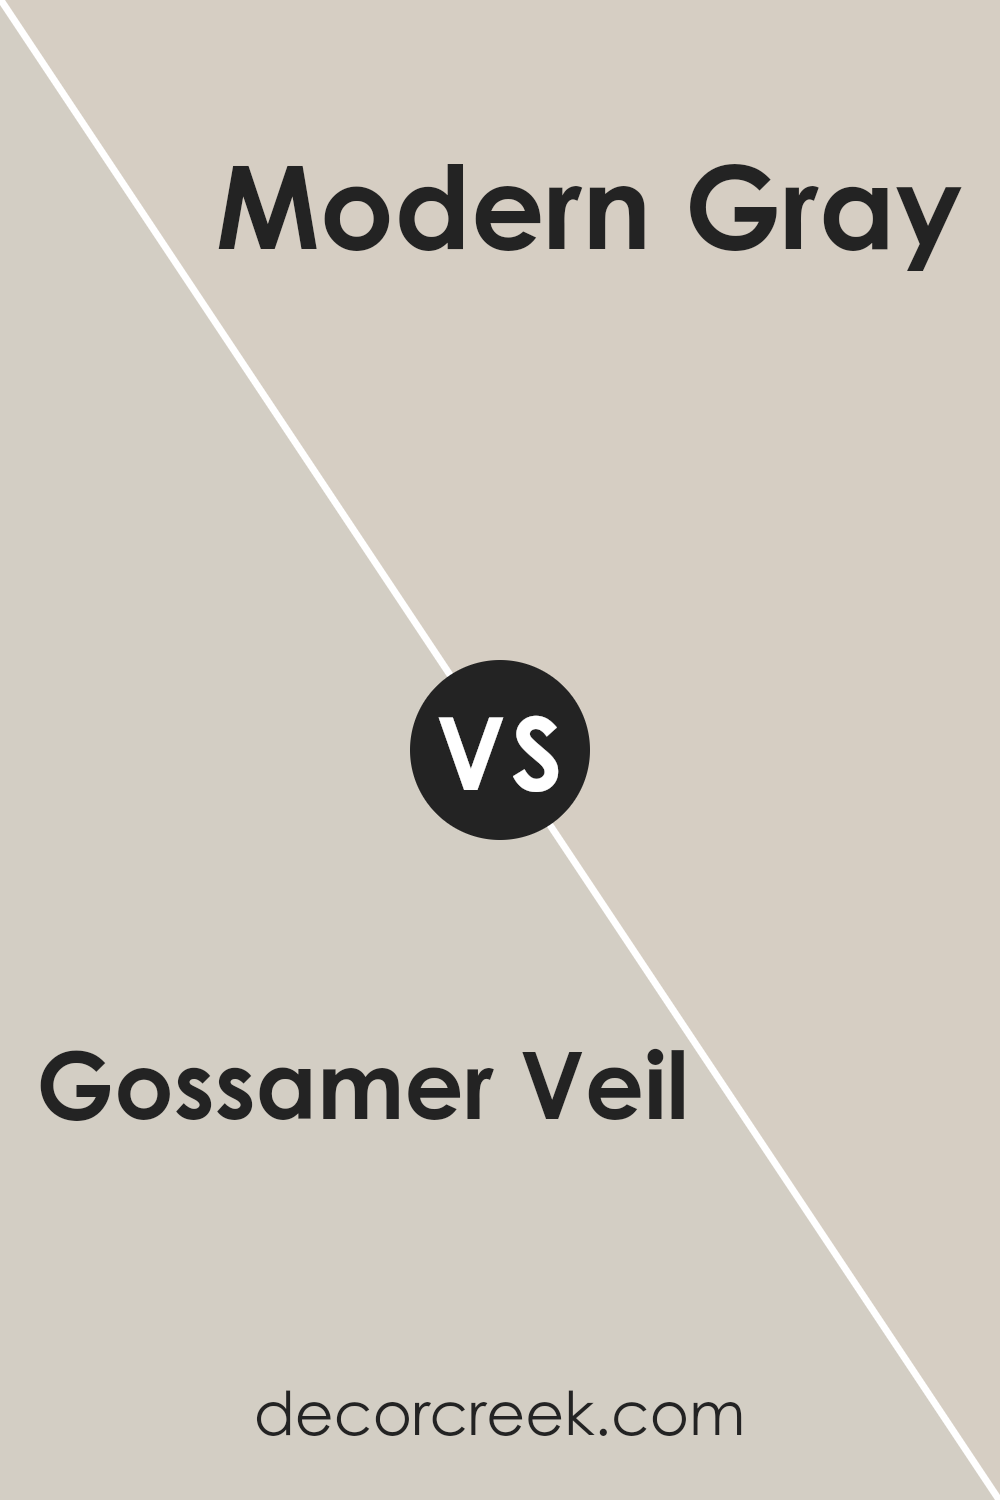 gossamer_veil_sw_9165_vs_modern_gray_sw_7632